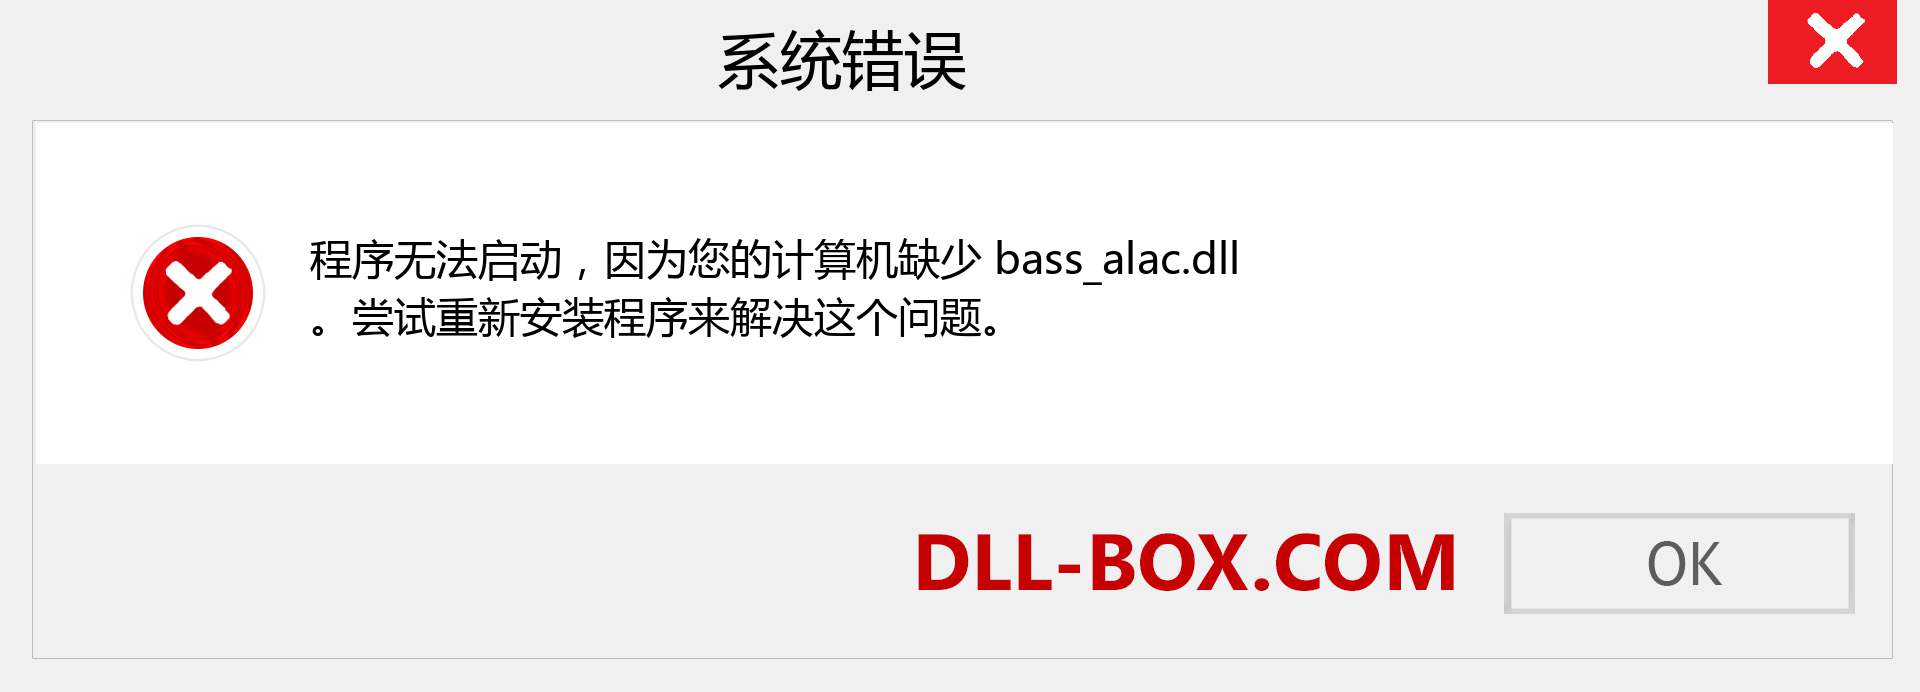 bass_alac.dll 文件丢失？。 适用于 Windows 7、8、10 的下载 - 修复 Windows、照片、图像上的 bass_alac dll 丢失错误